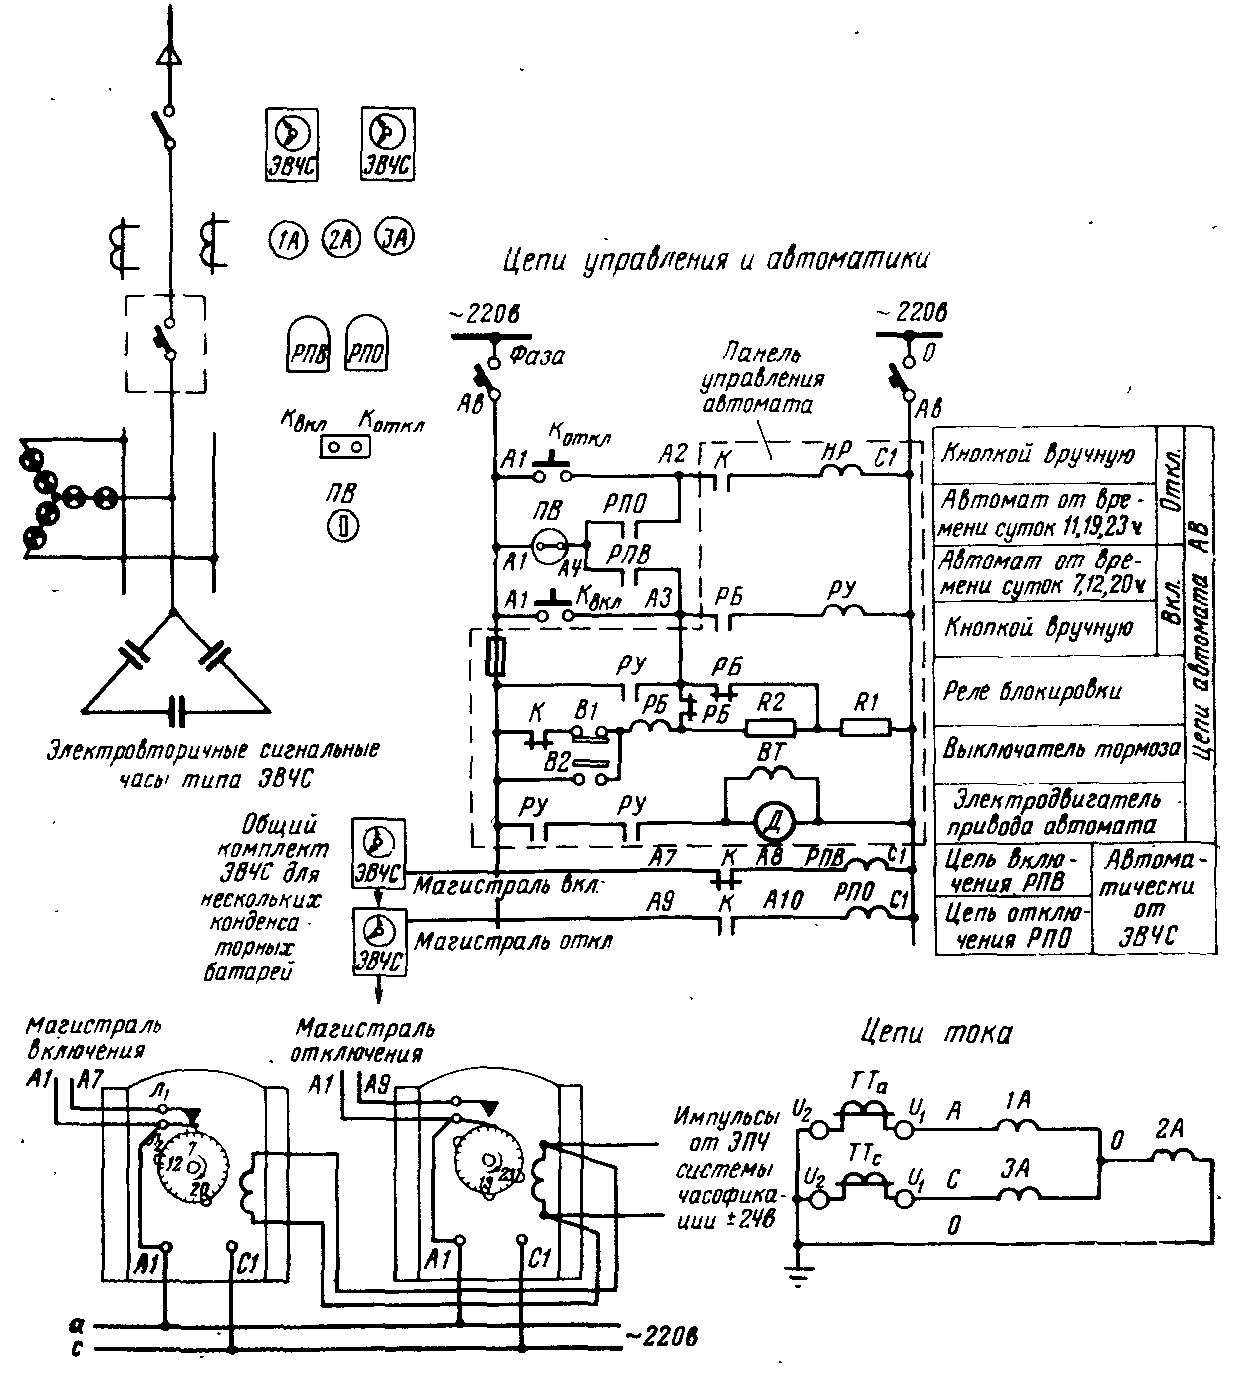 Схема одноступенчатого регулирования мощности конденсаторных установок